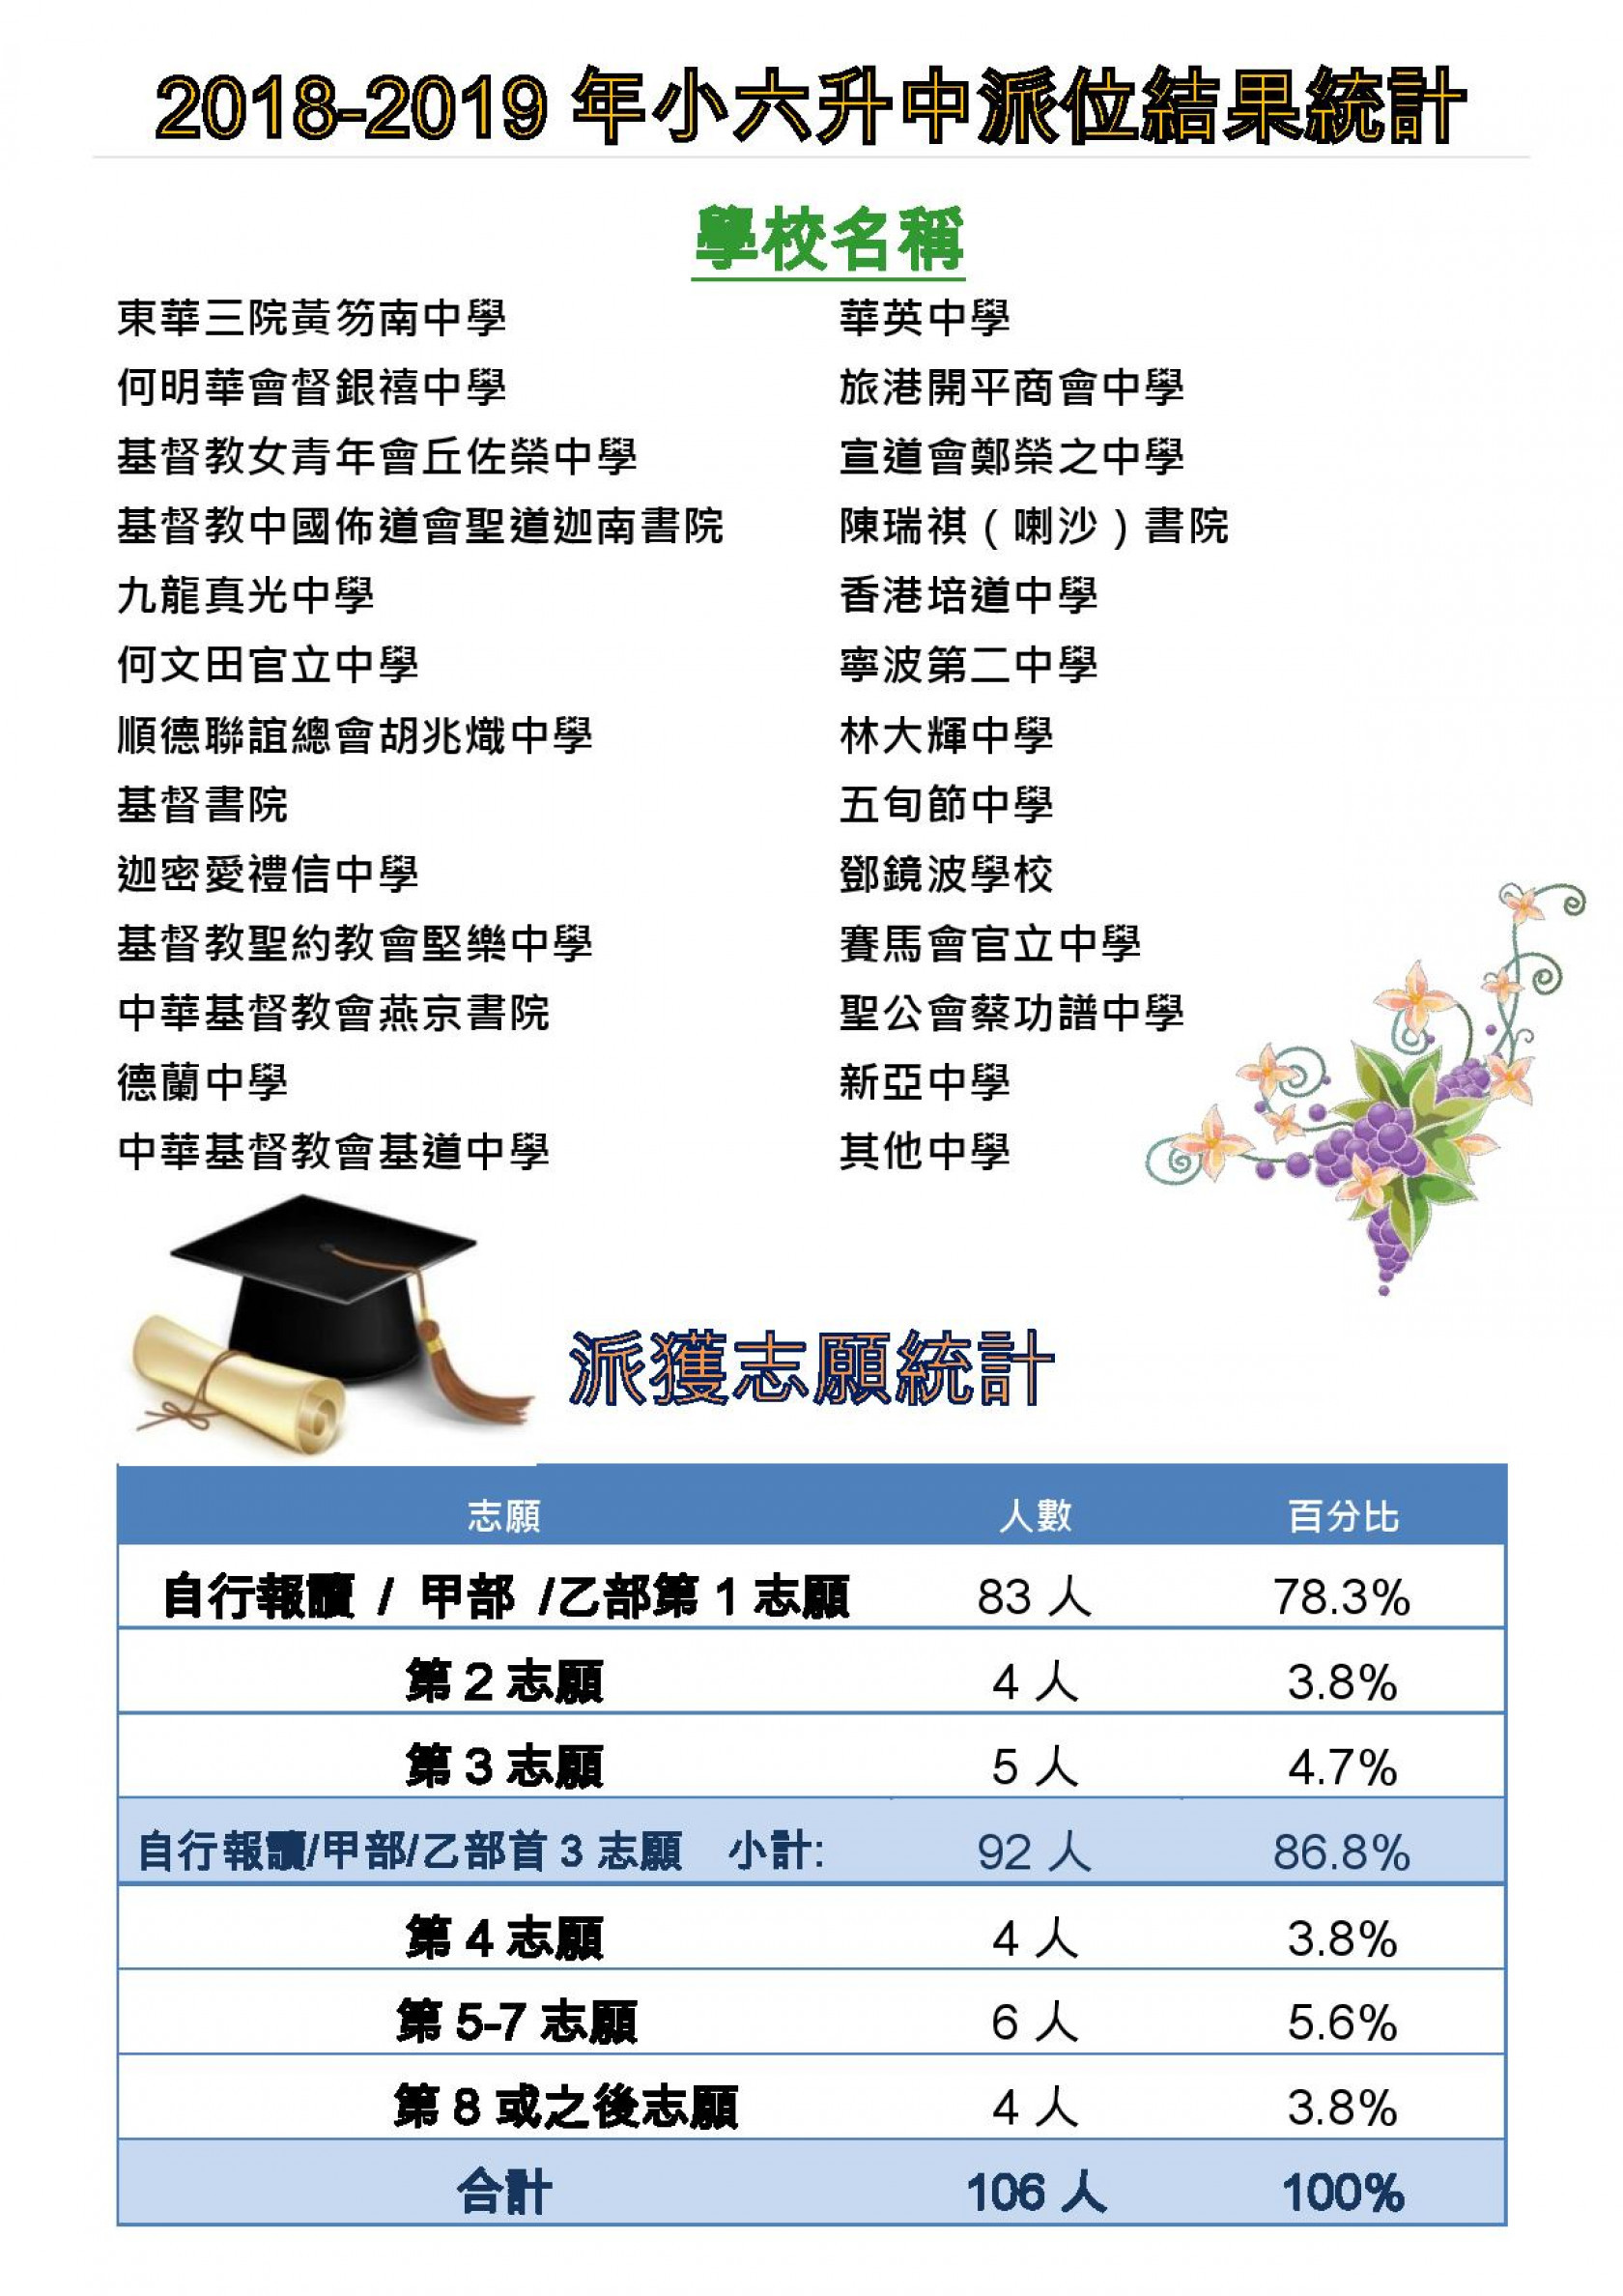 2018-2019年小六升中派位結果統計